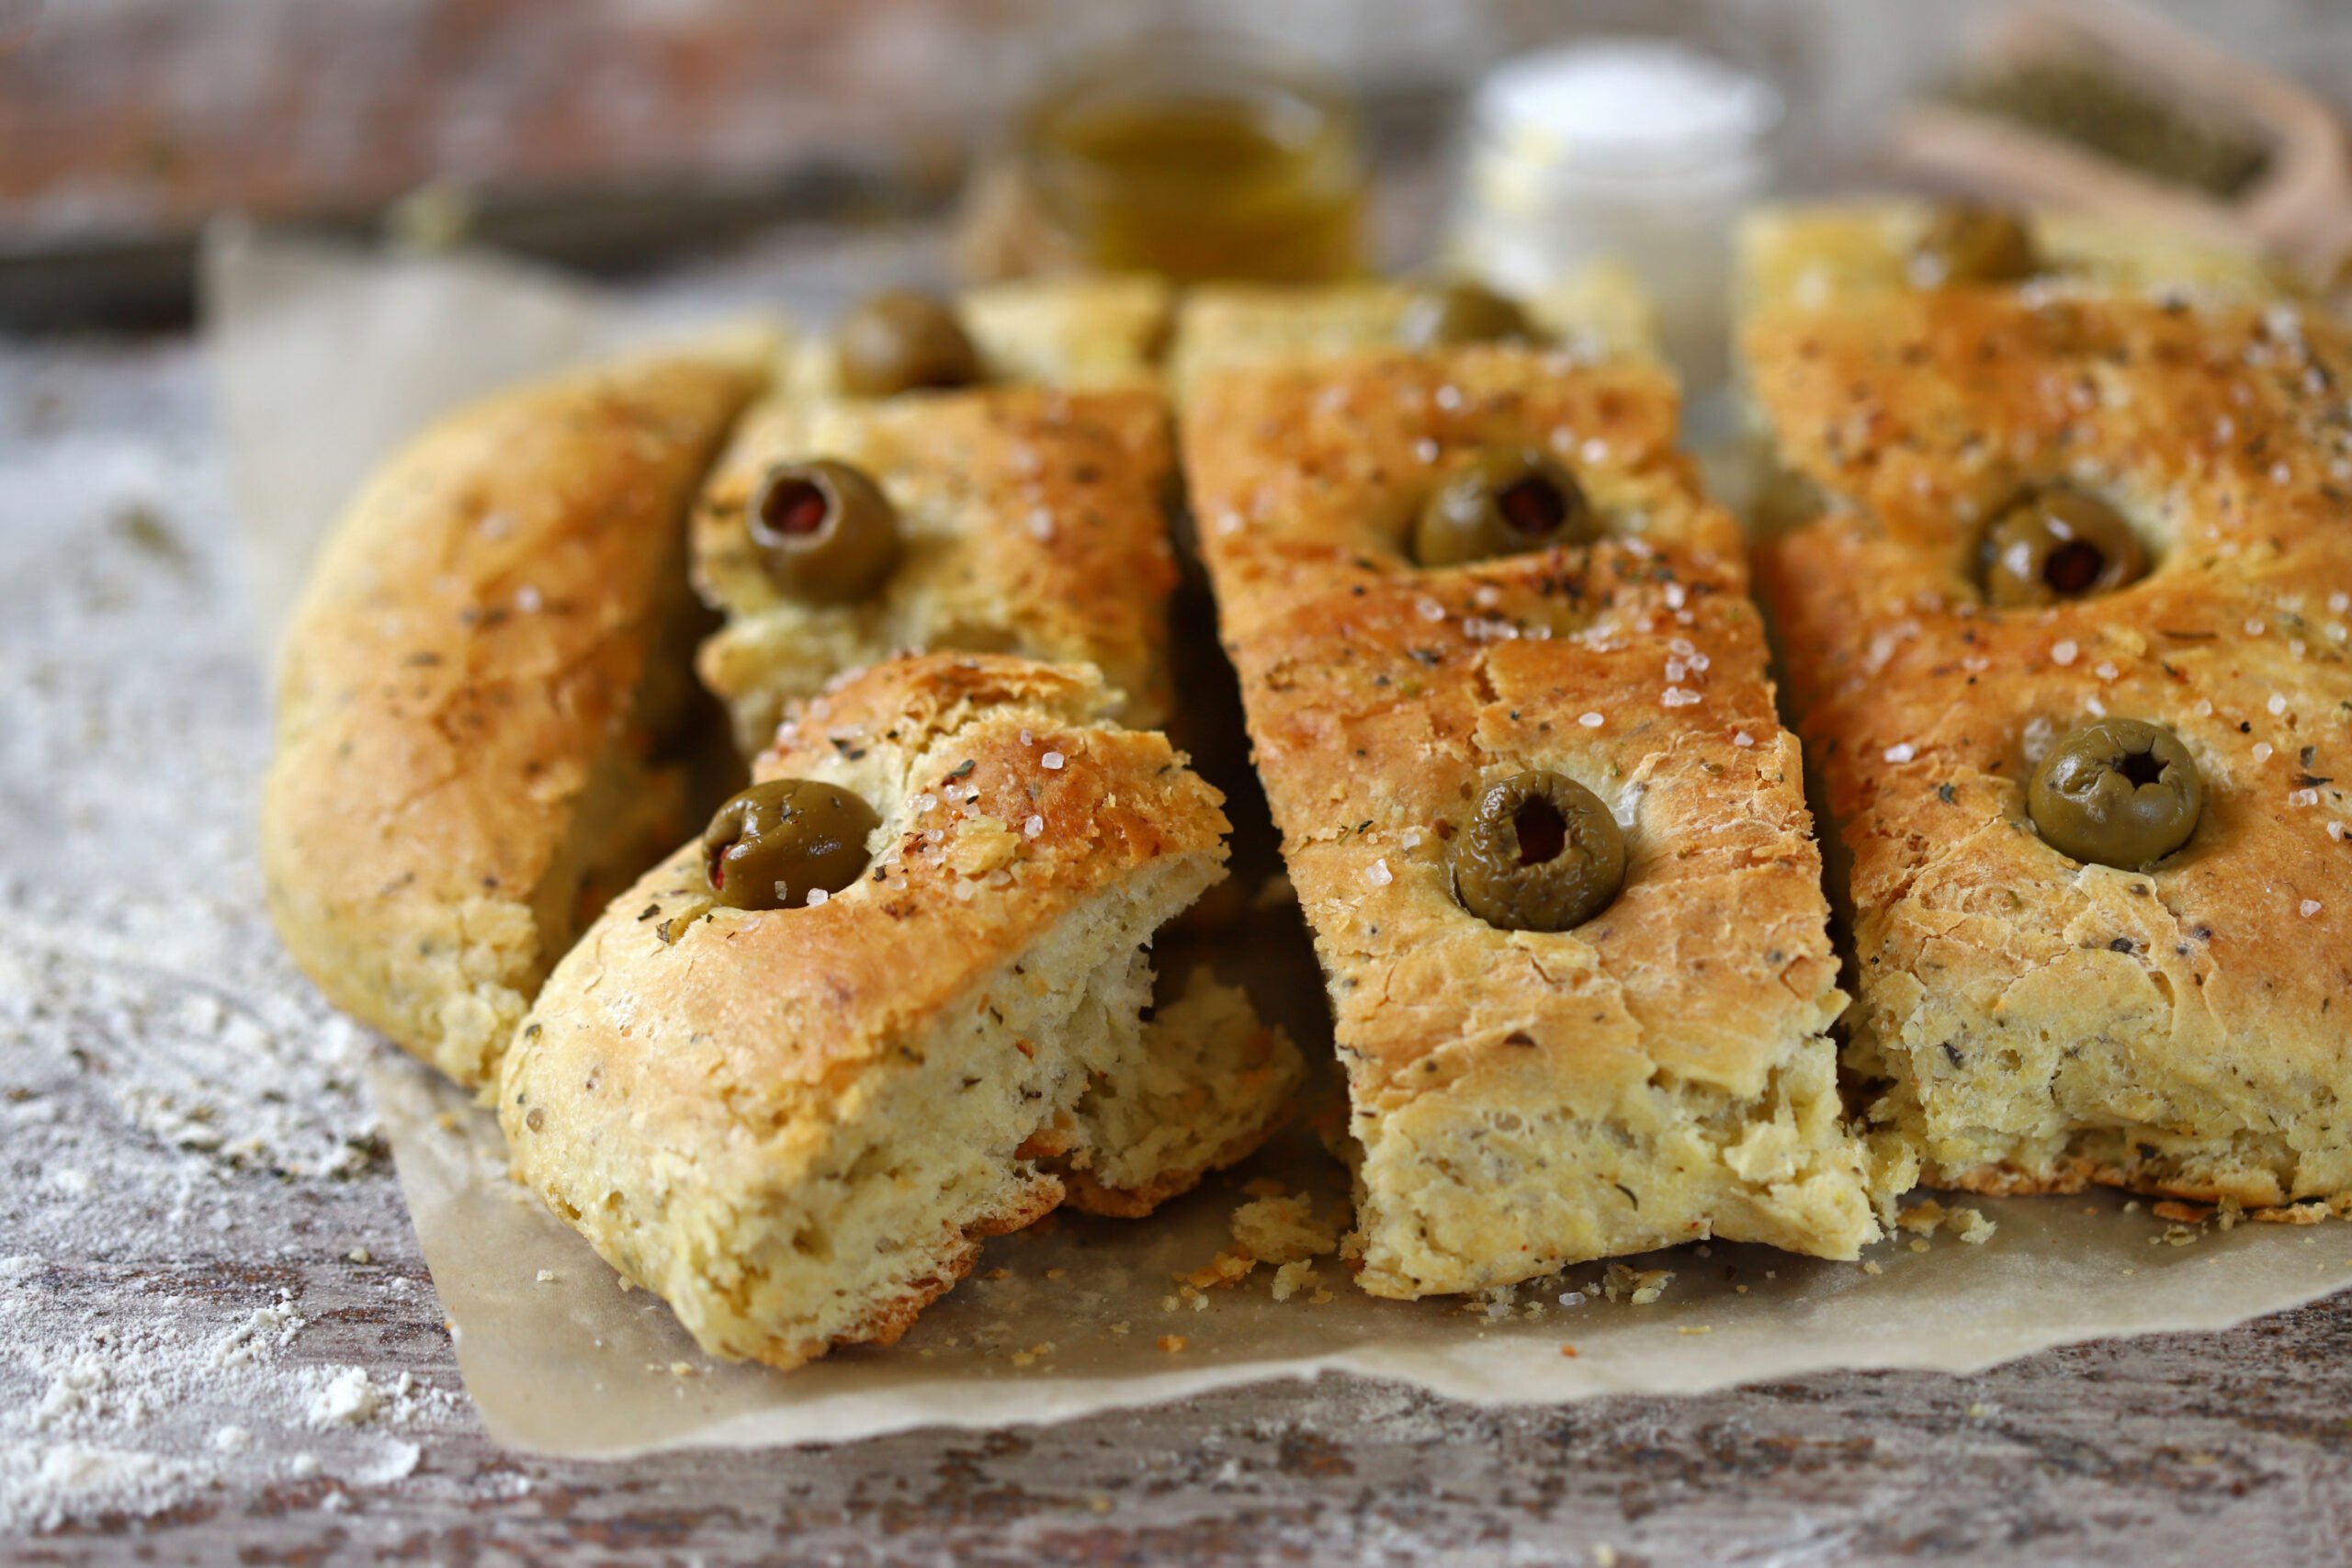 Focaccia croccante con le olive: super saporita!